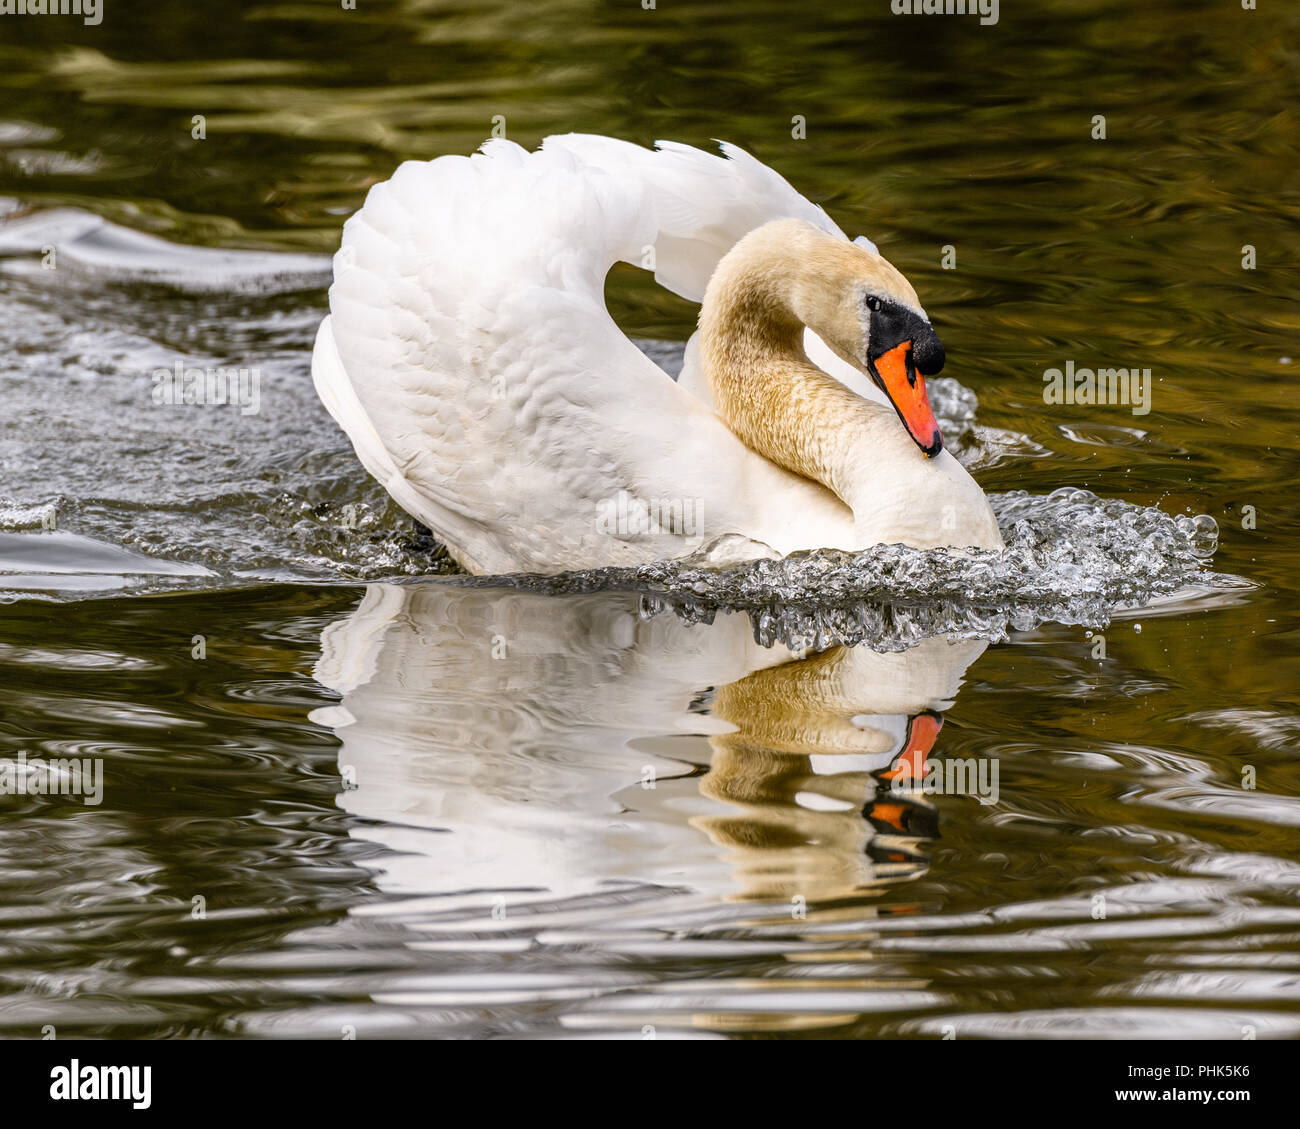 Cisne en modo de ataque mientras nadaban en un estanque Foto de stock